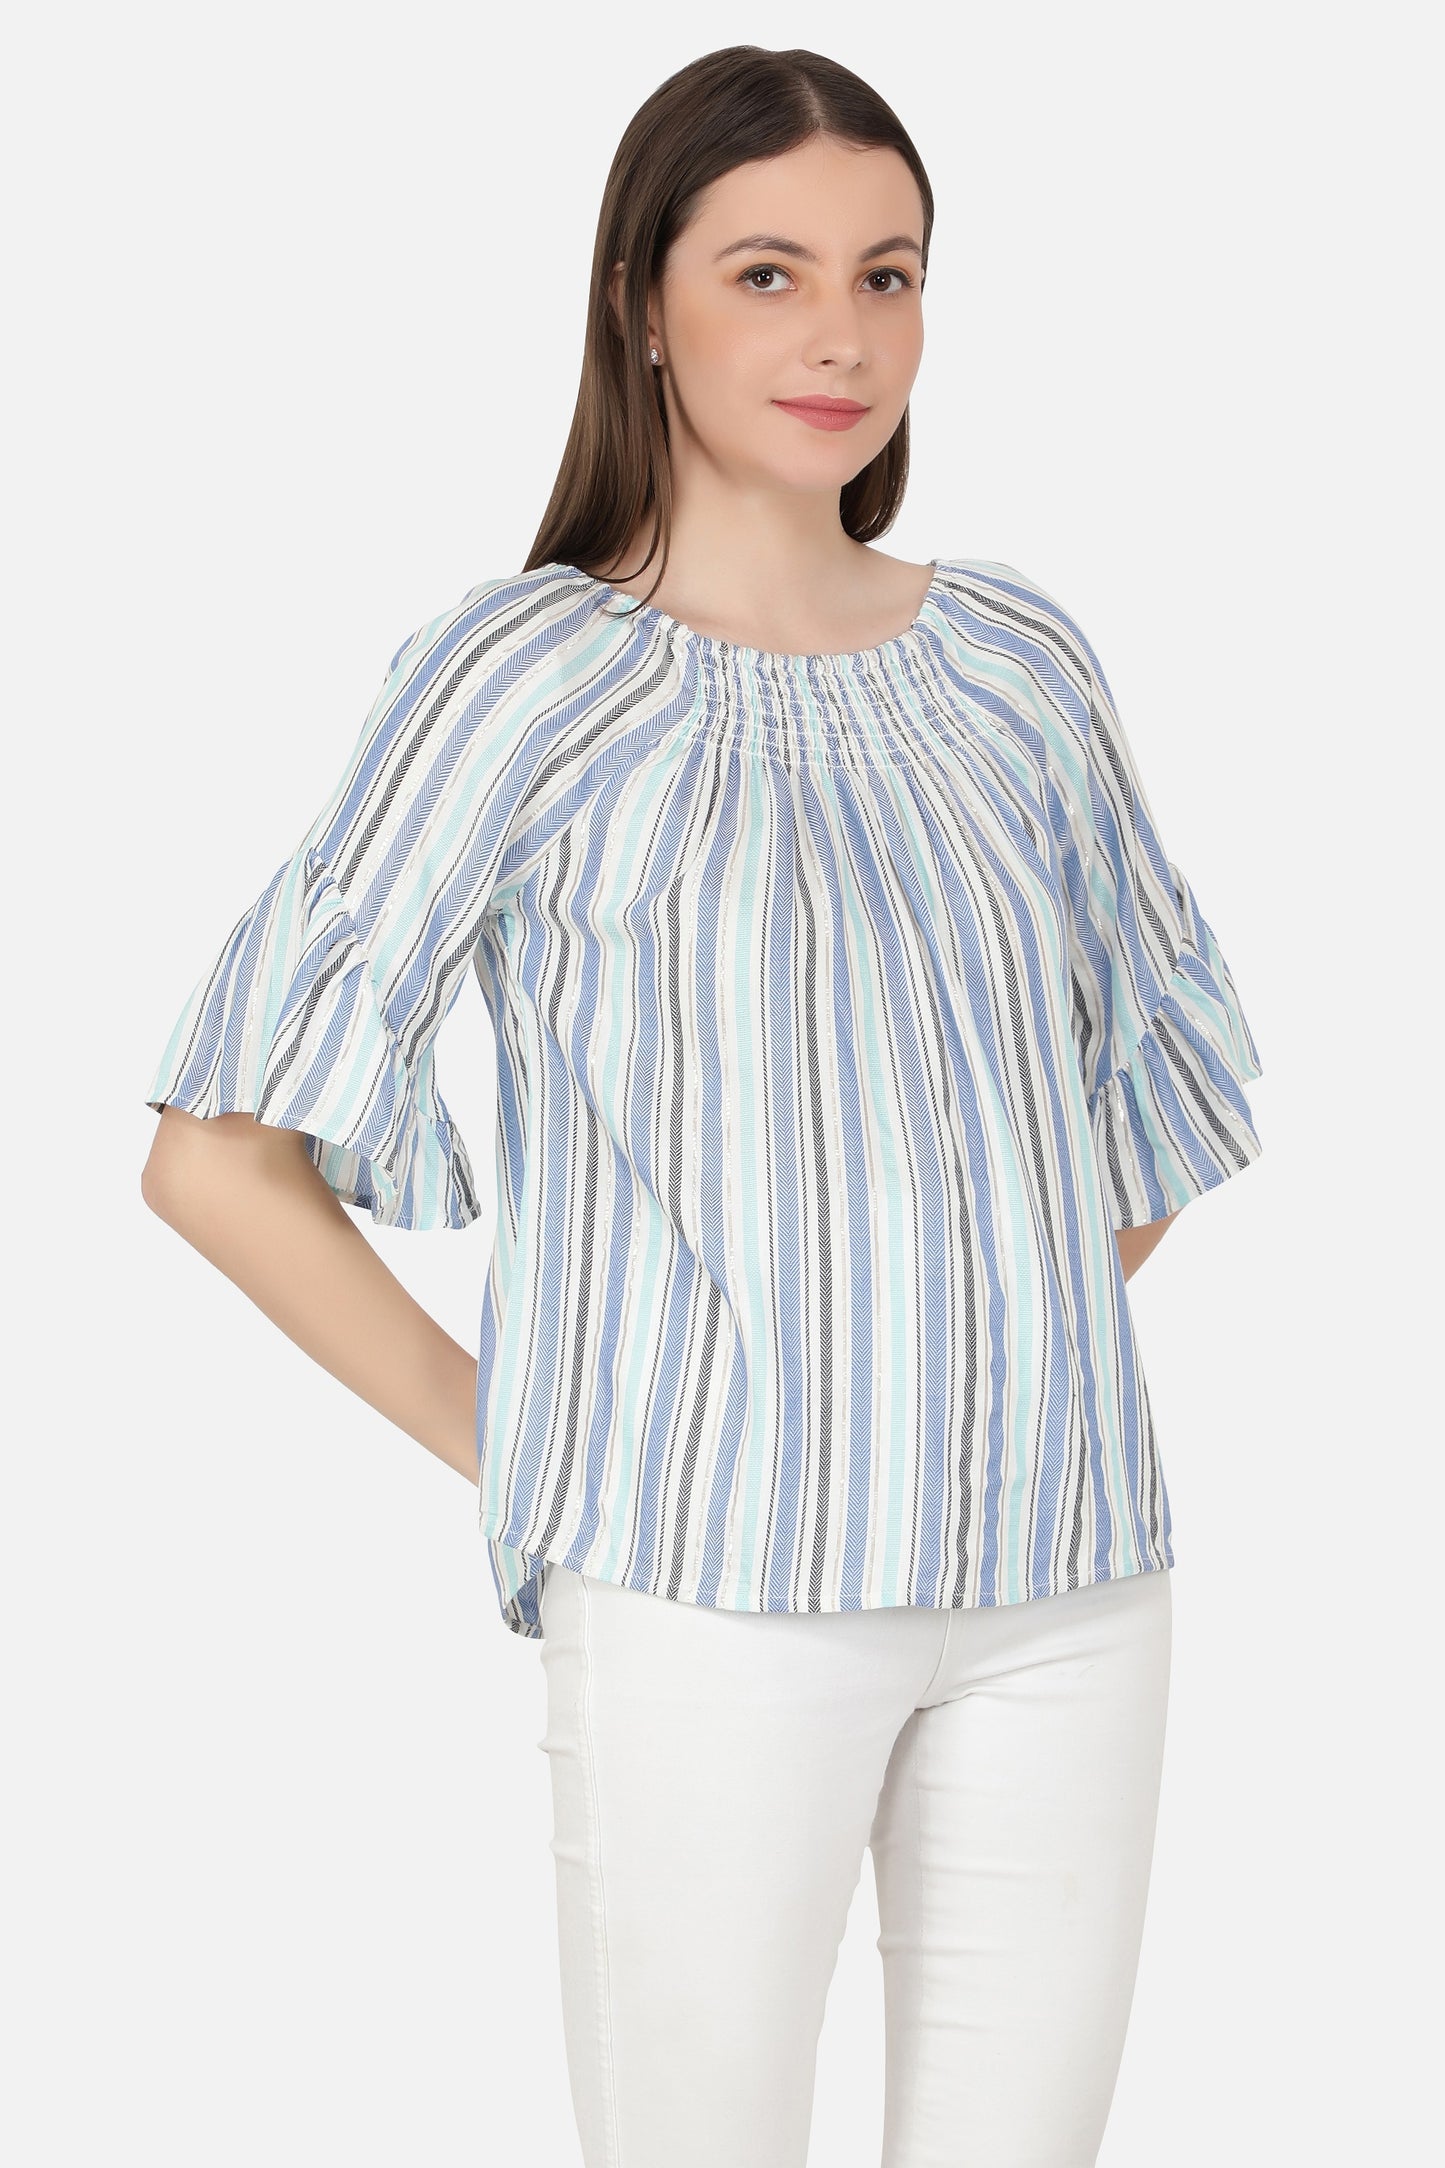 NUEVOSDAMAS Women Western Rayon Multi Stripe Top (Light Blue)